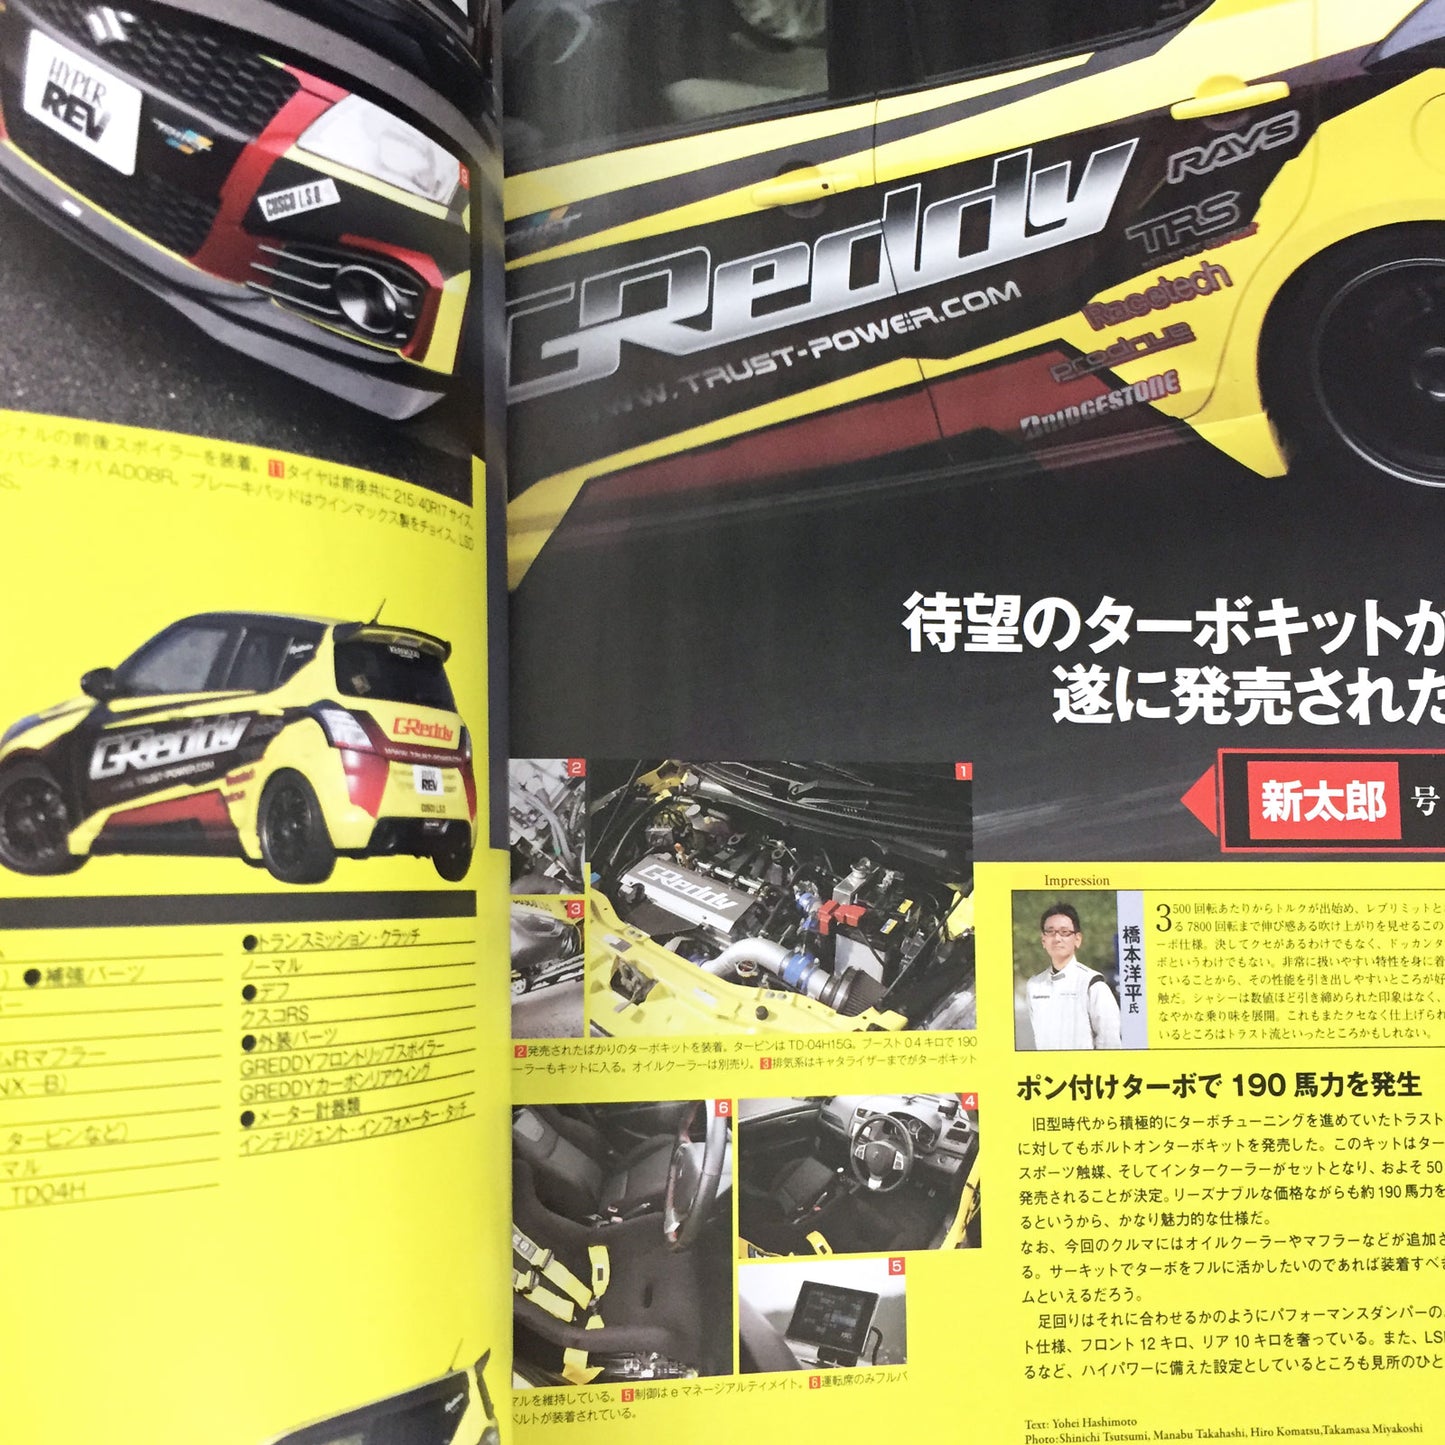 HYPER REV Vol.177 Suzuki Swift No.5